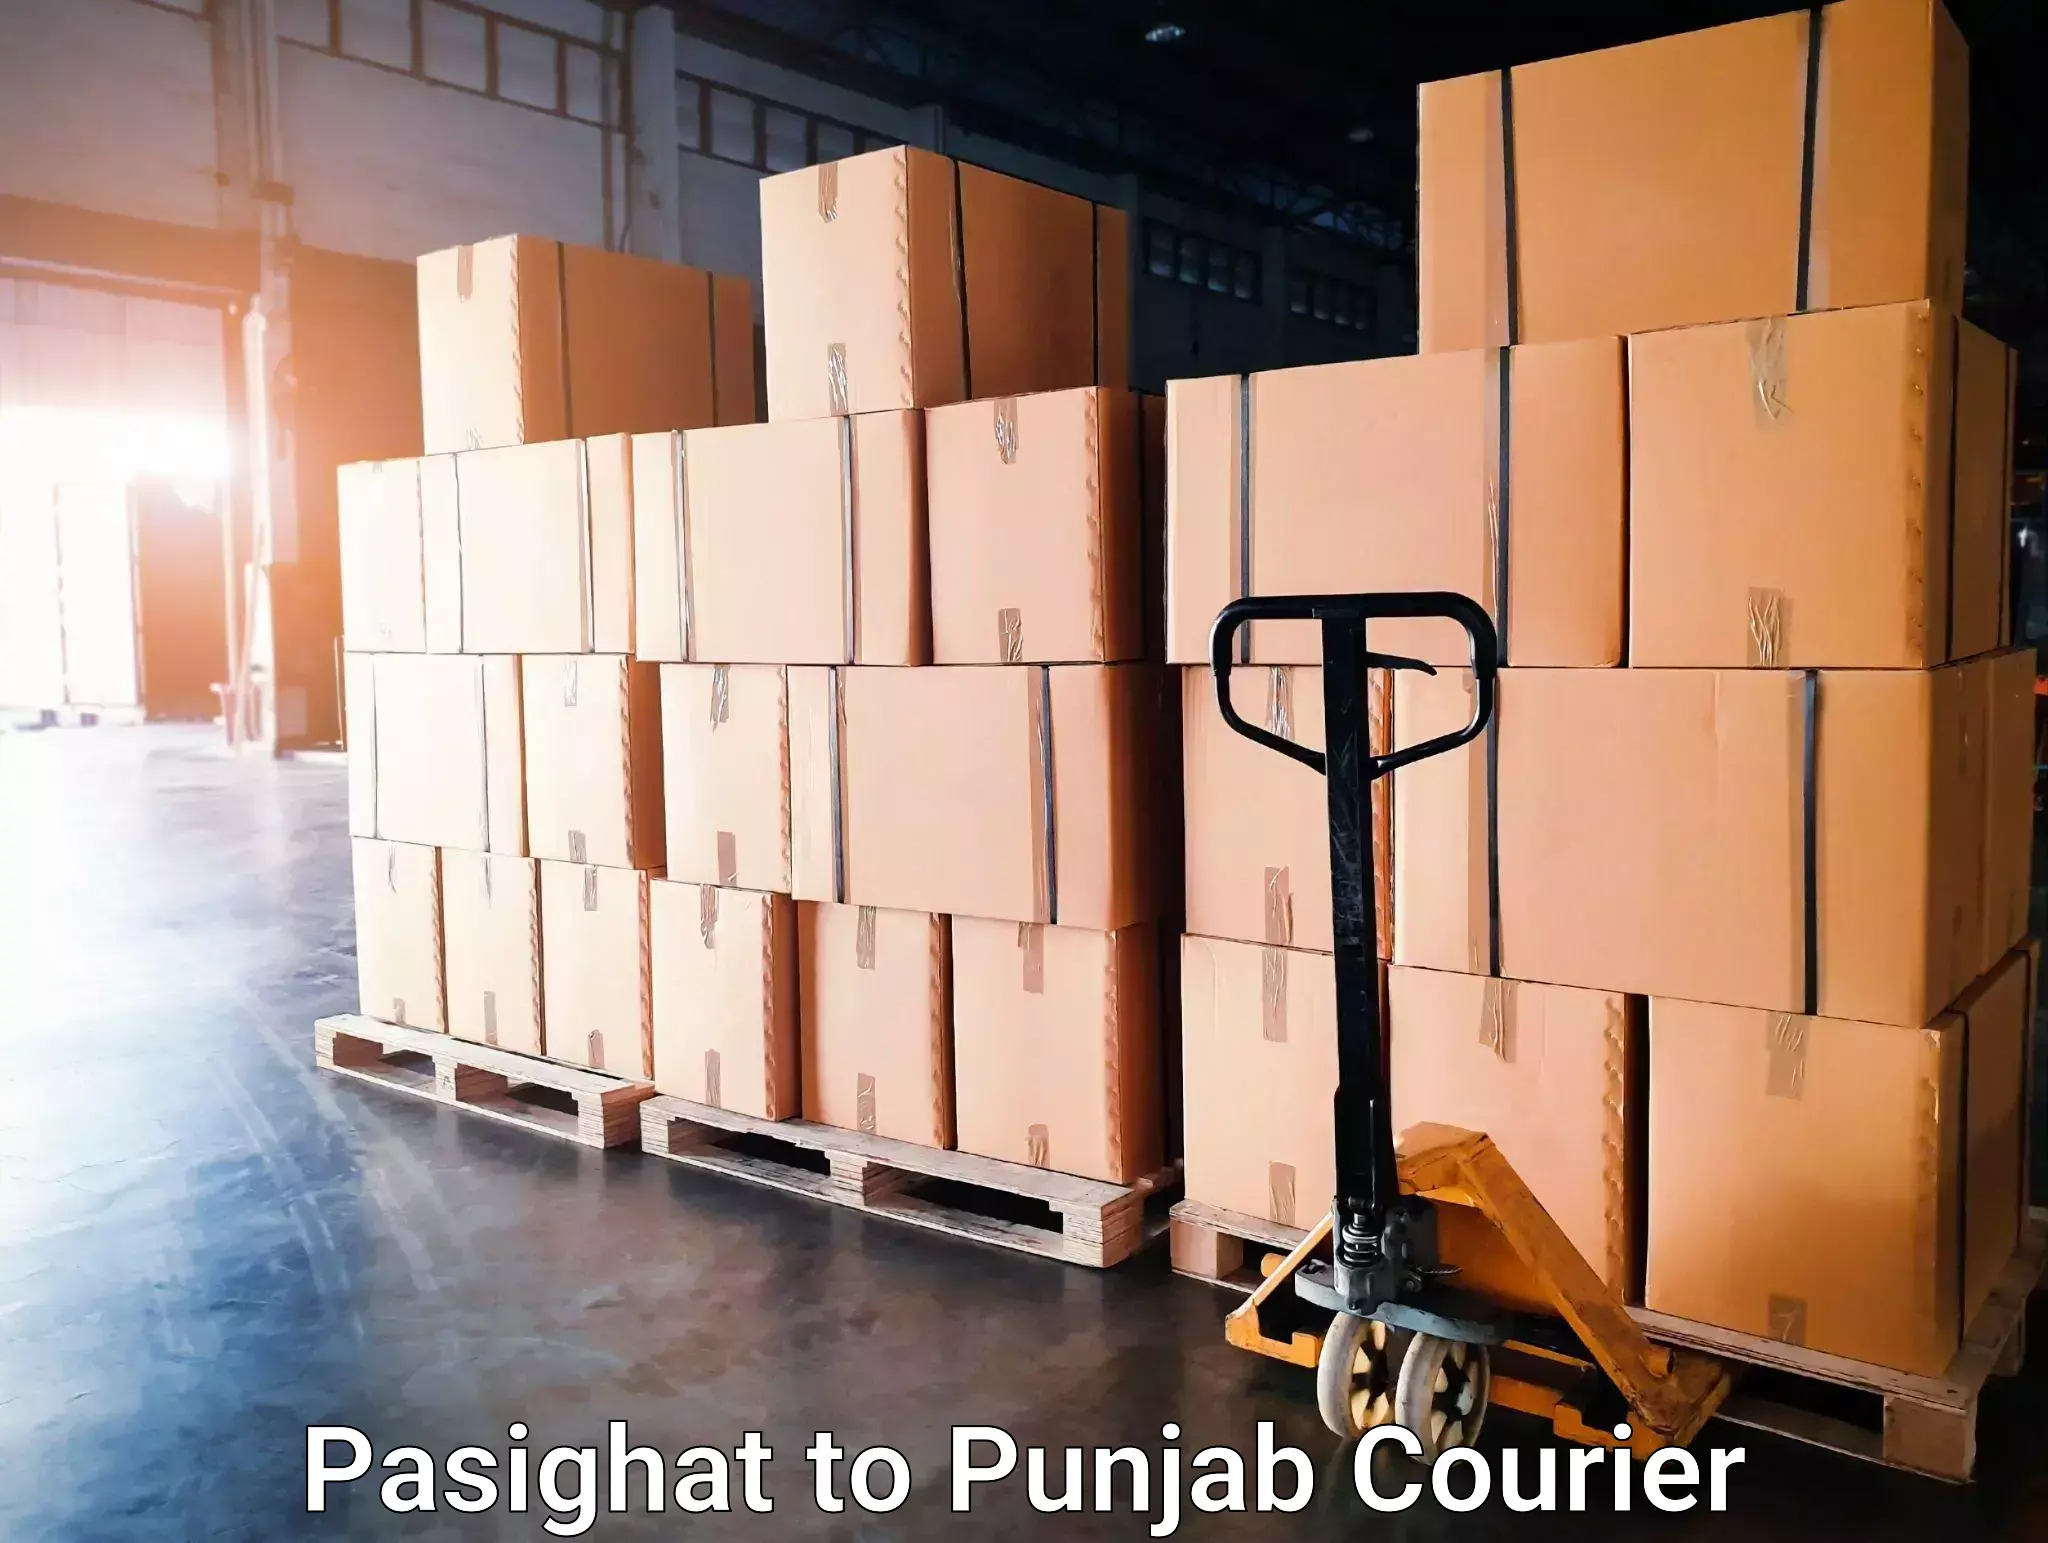 Expedited shipping methods Pasighat to Punjab